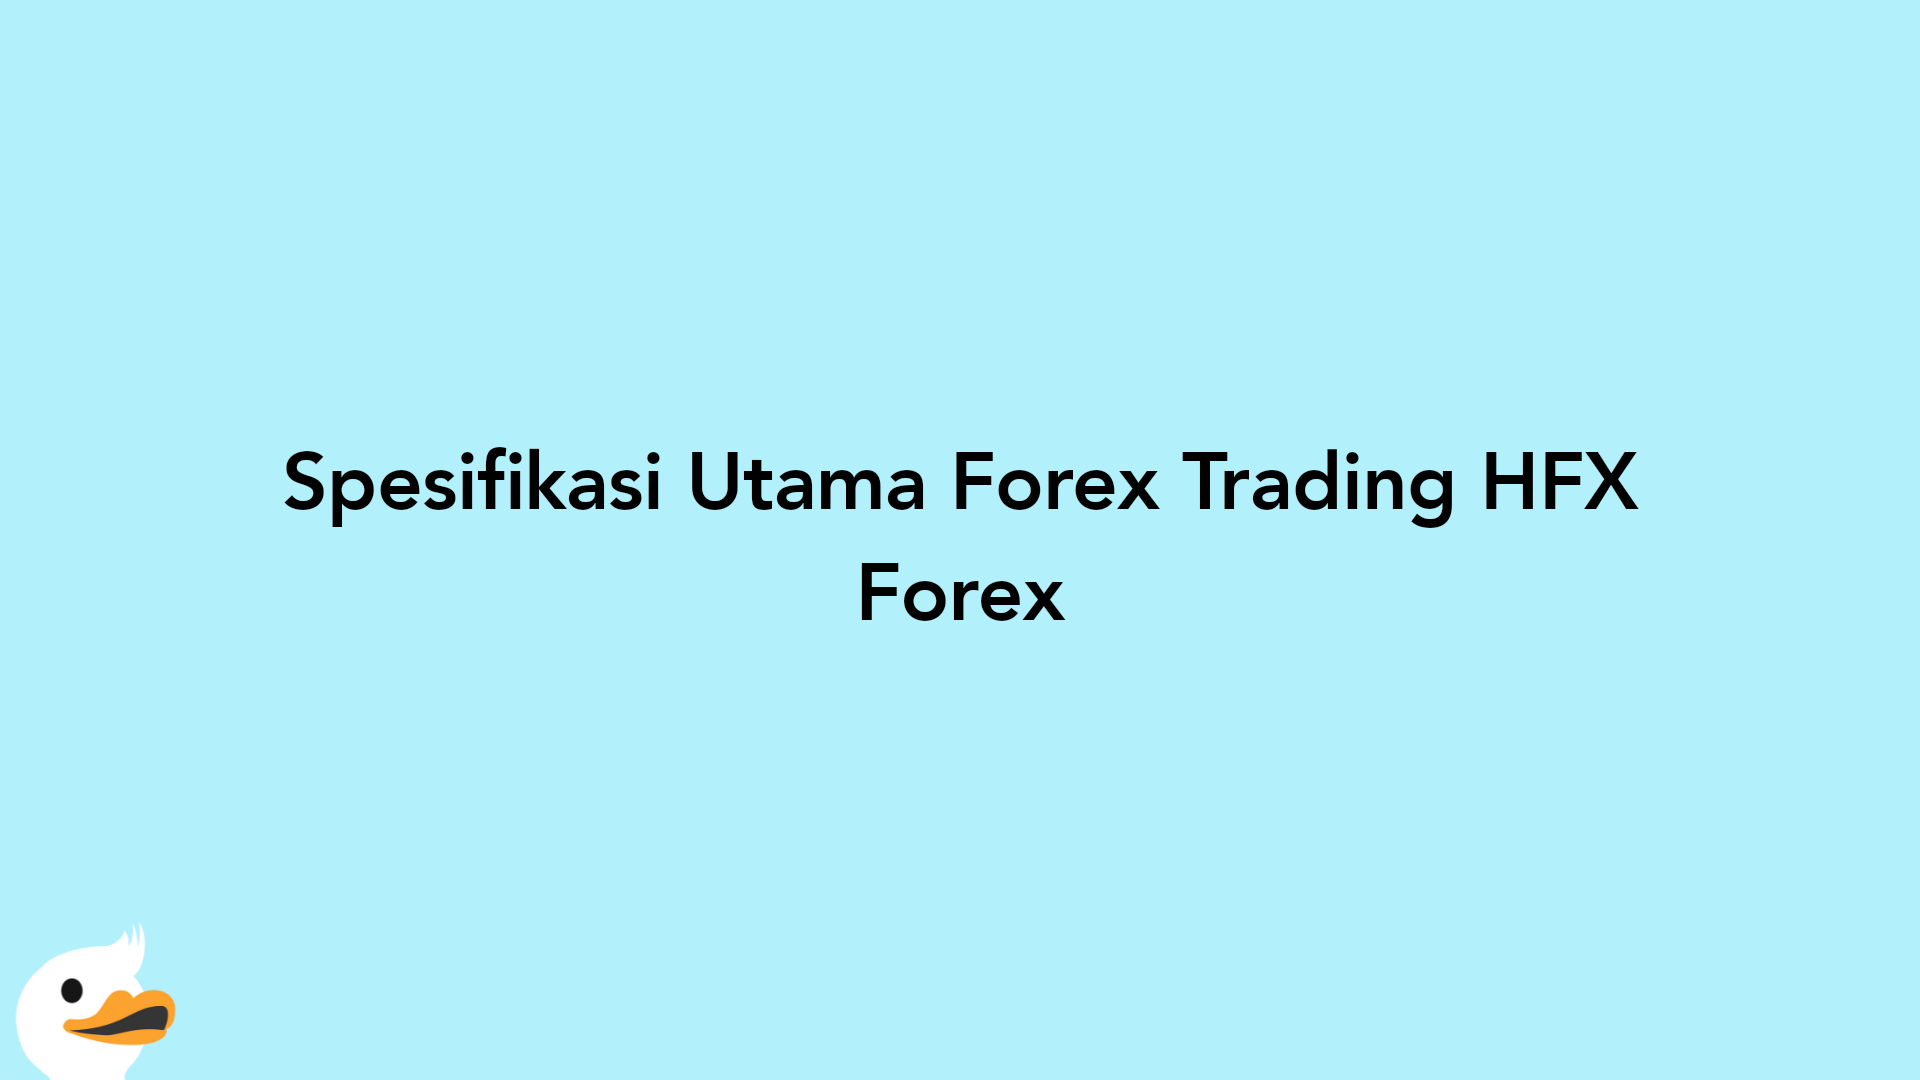 Spesifikasi Utama Forex Trading HFX Forex